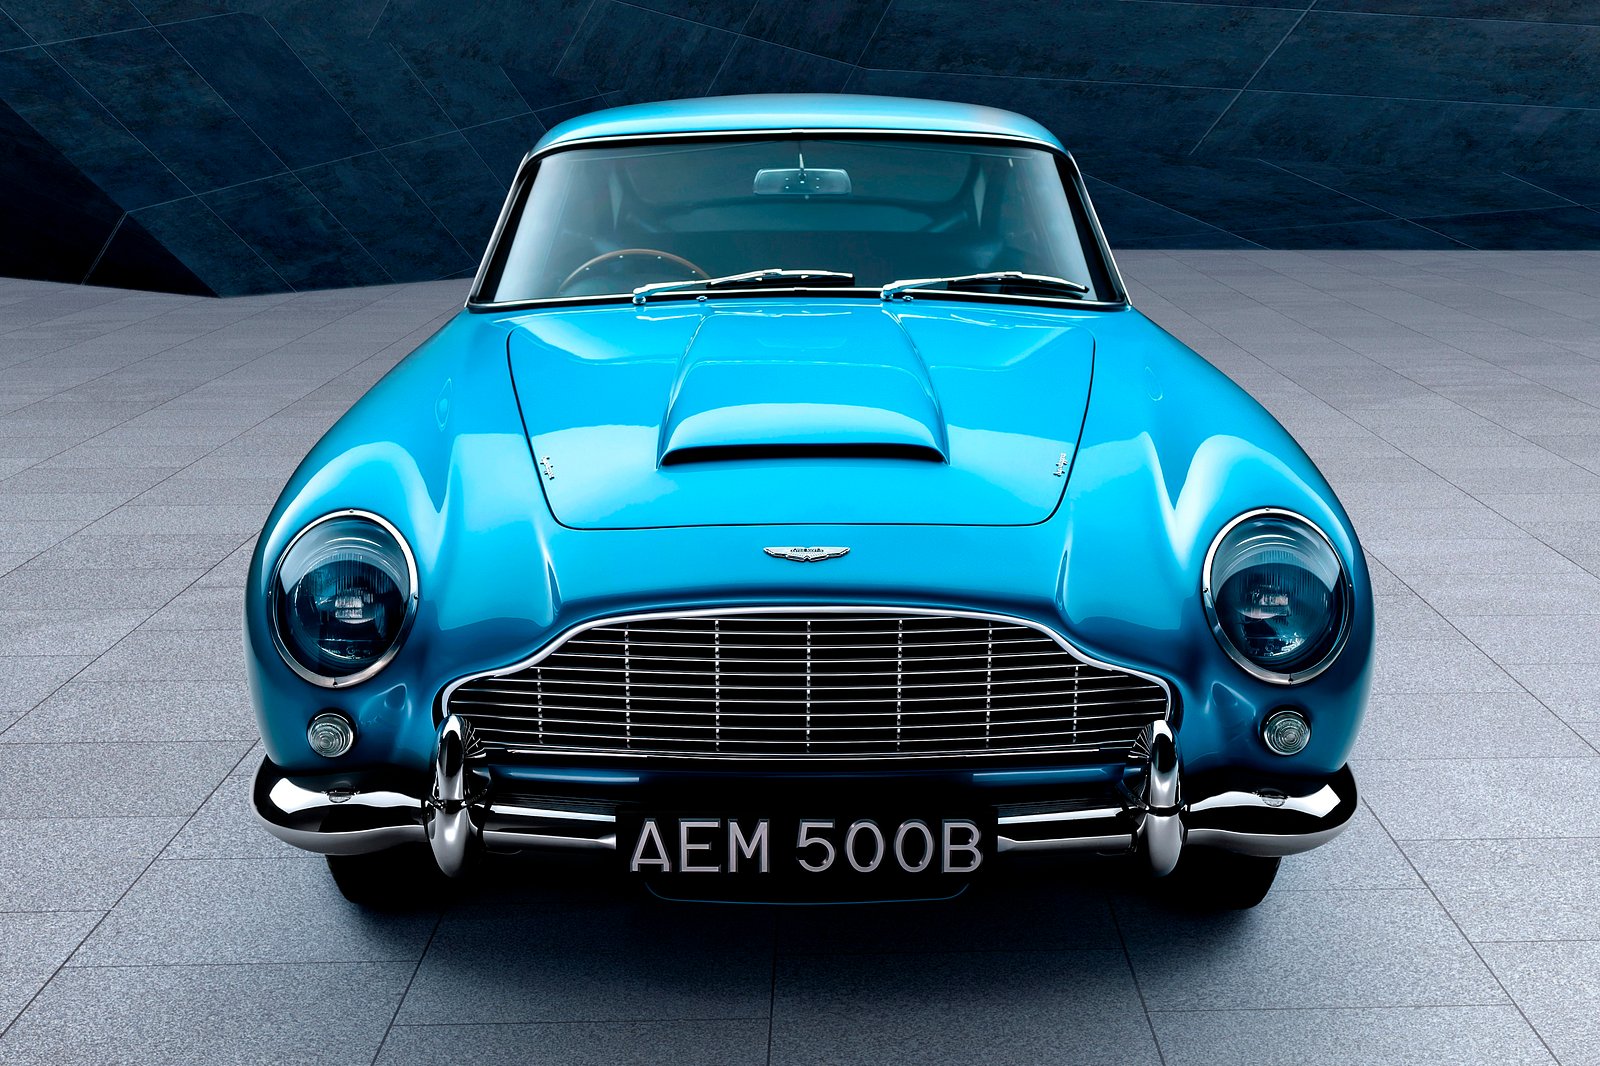 60 Years Ago, An Aston Martin Icon Was Born